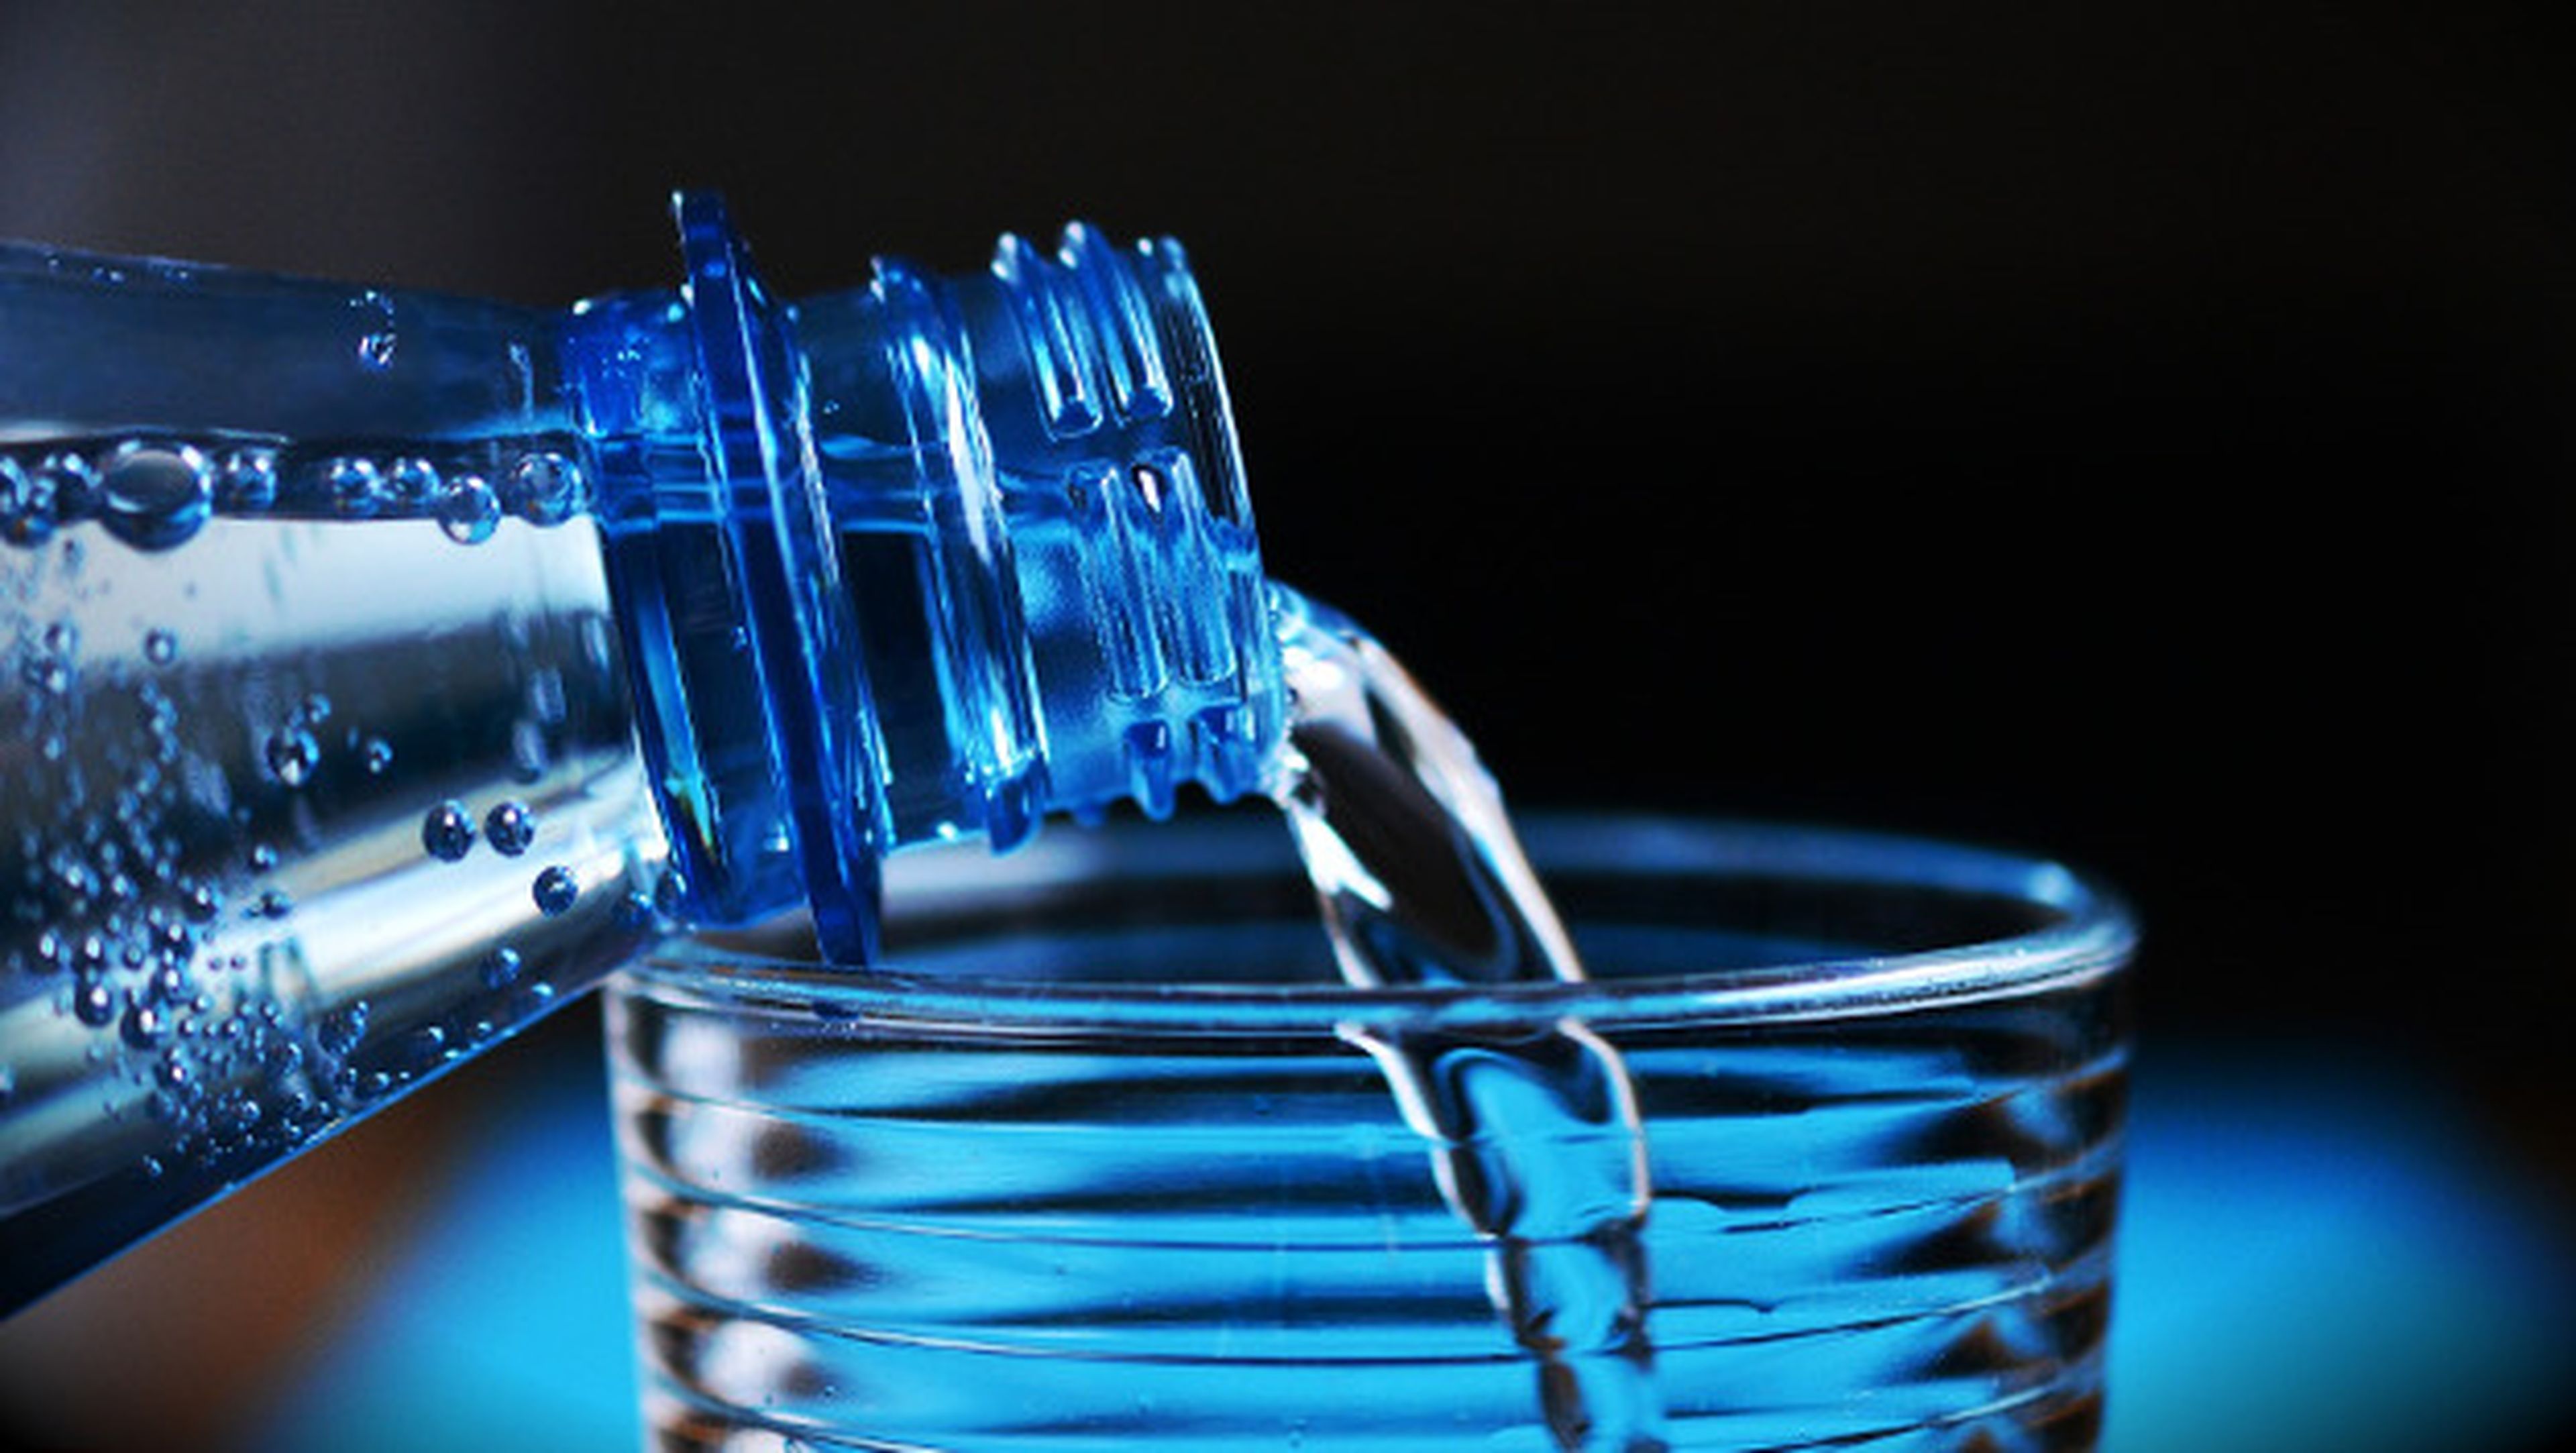 Beneficios para la salud de beber sólo agua.